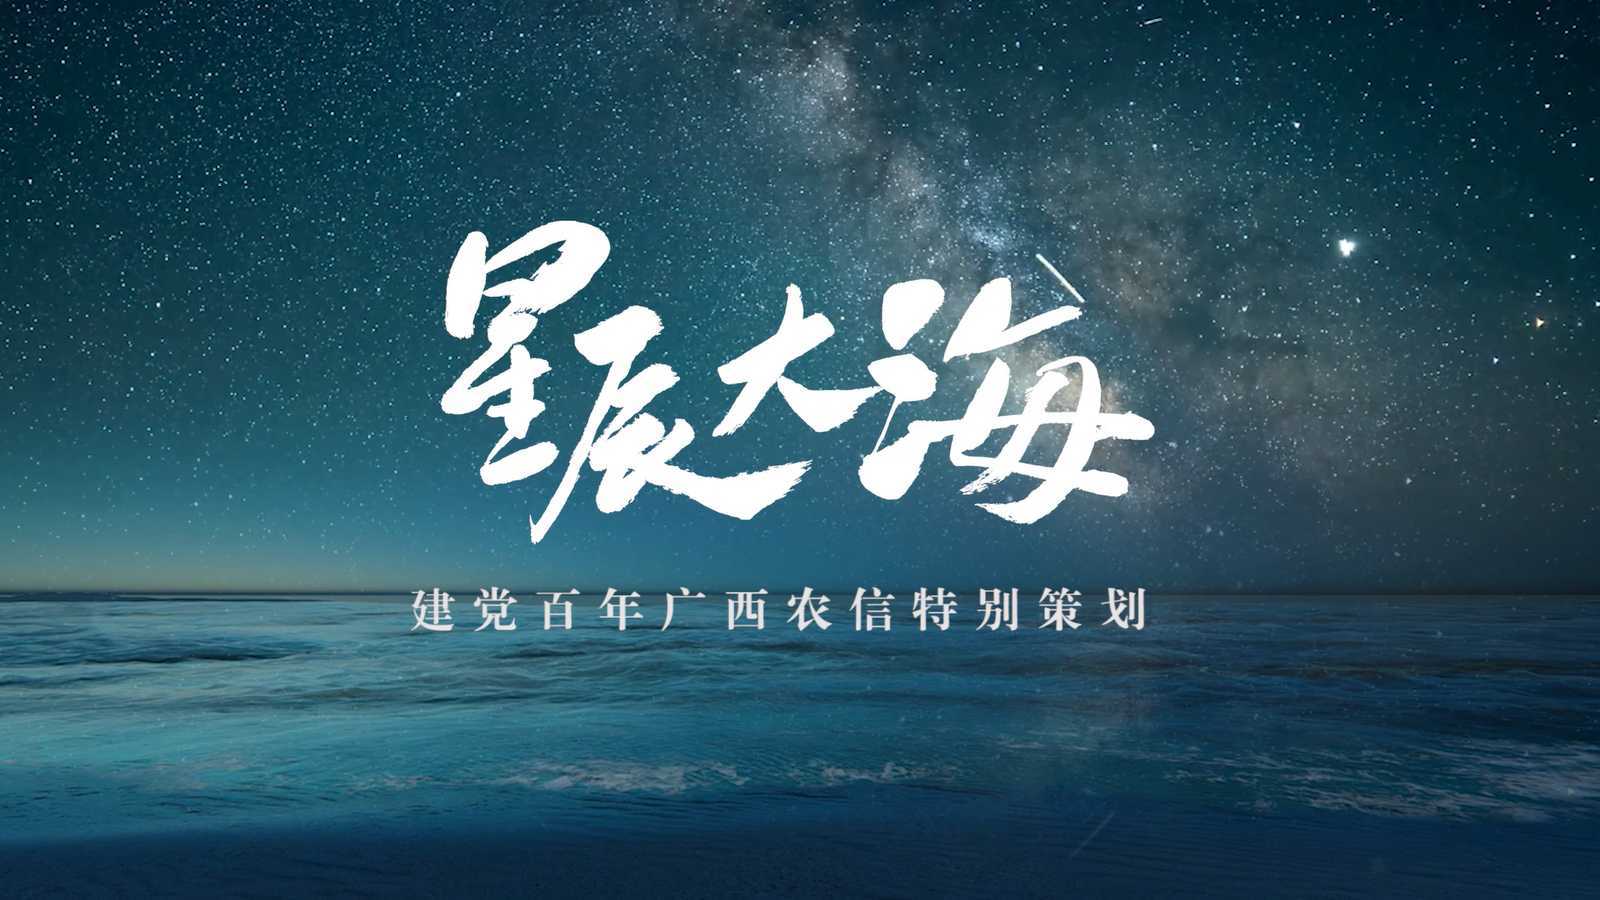 星辰大海MV 建党百年广西农信特别策划